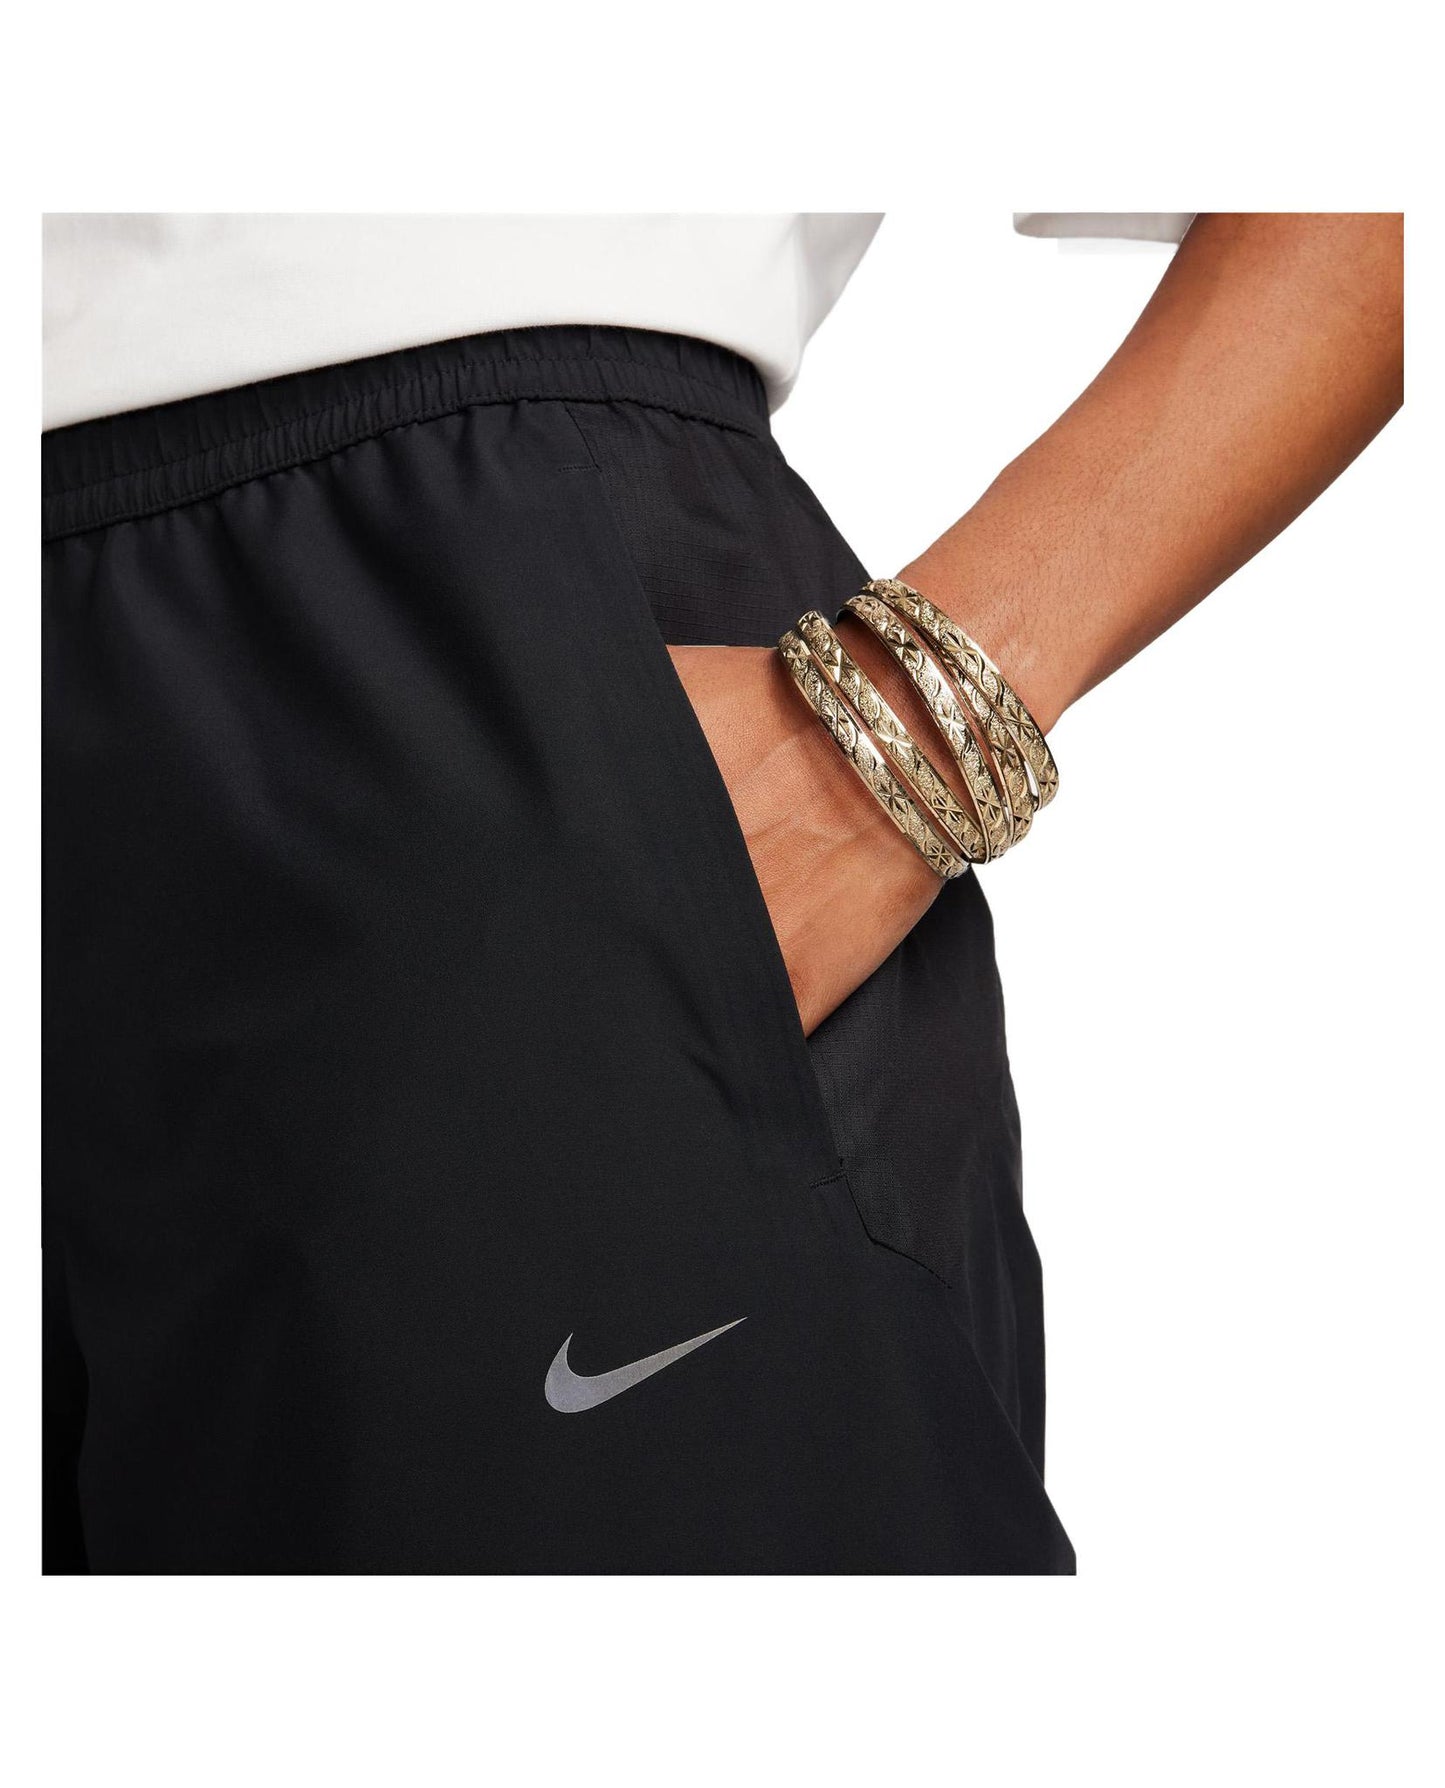 
                    
                      Nike Nocta Men's Track Pant
                    
                  